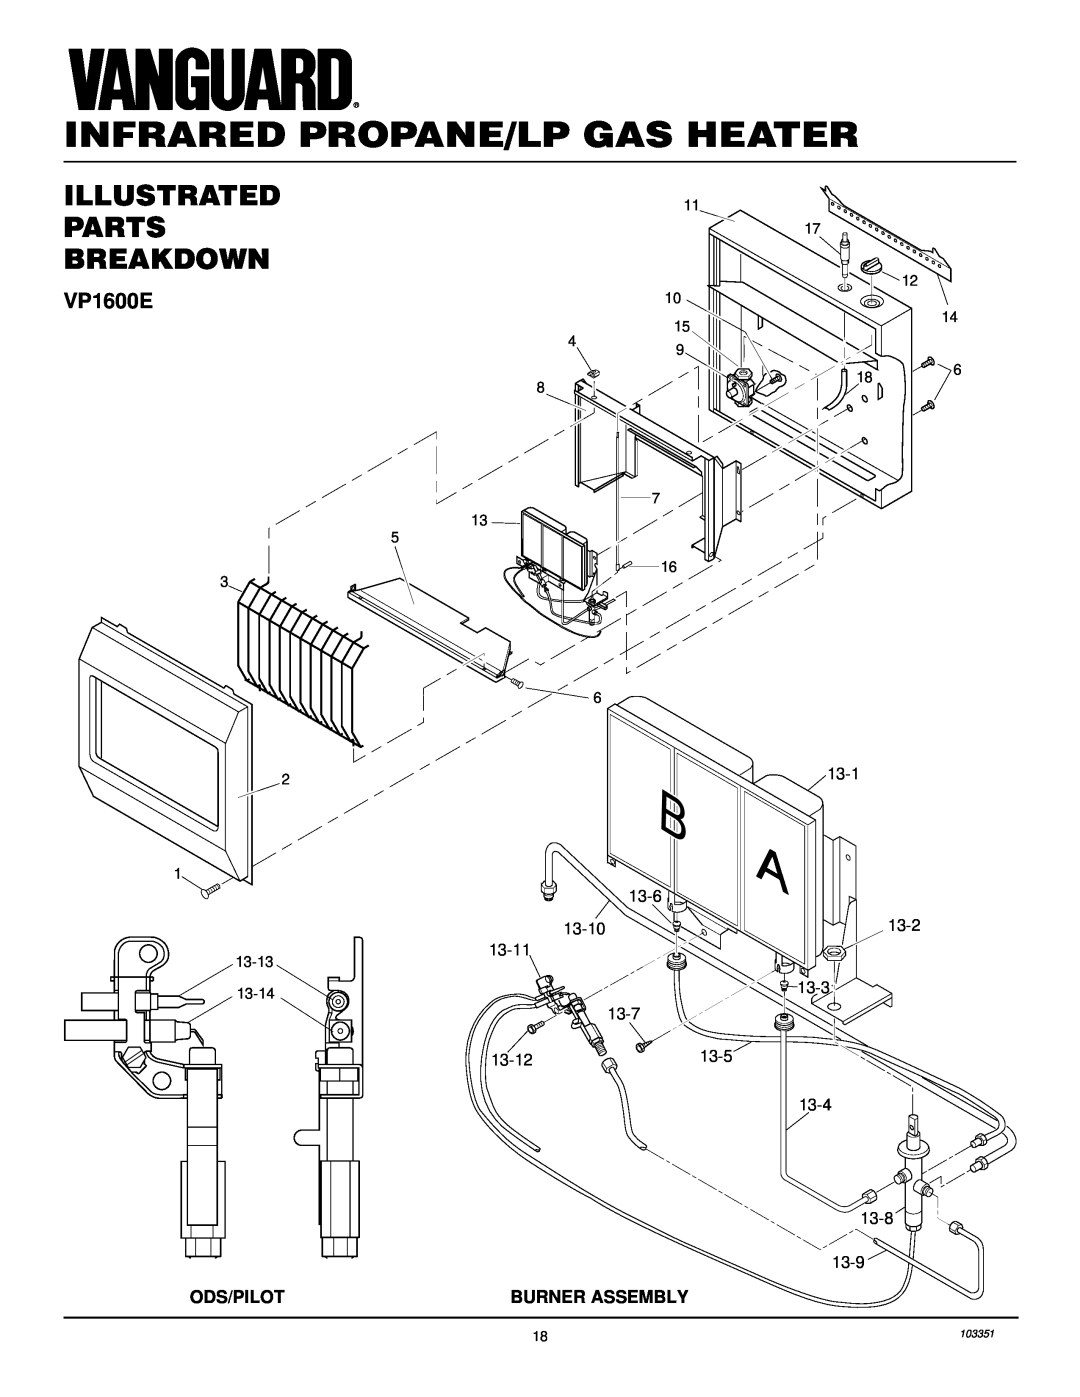 Desa VP1600E, VP2600E installation manual Illustrated Parts Breakdown, Infrared Propane/Lp Gas Heater, 103351 